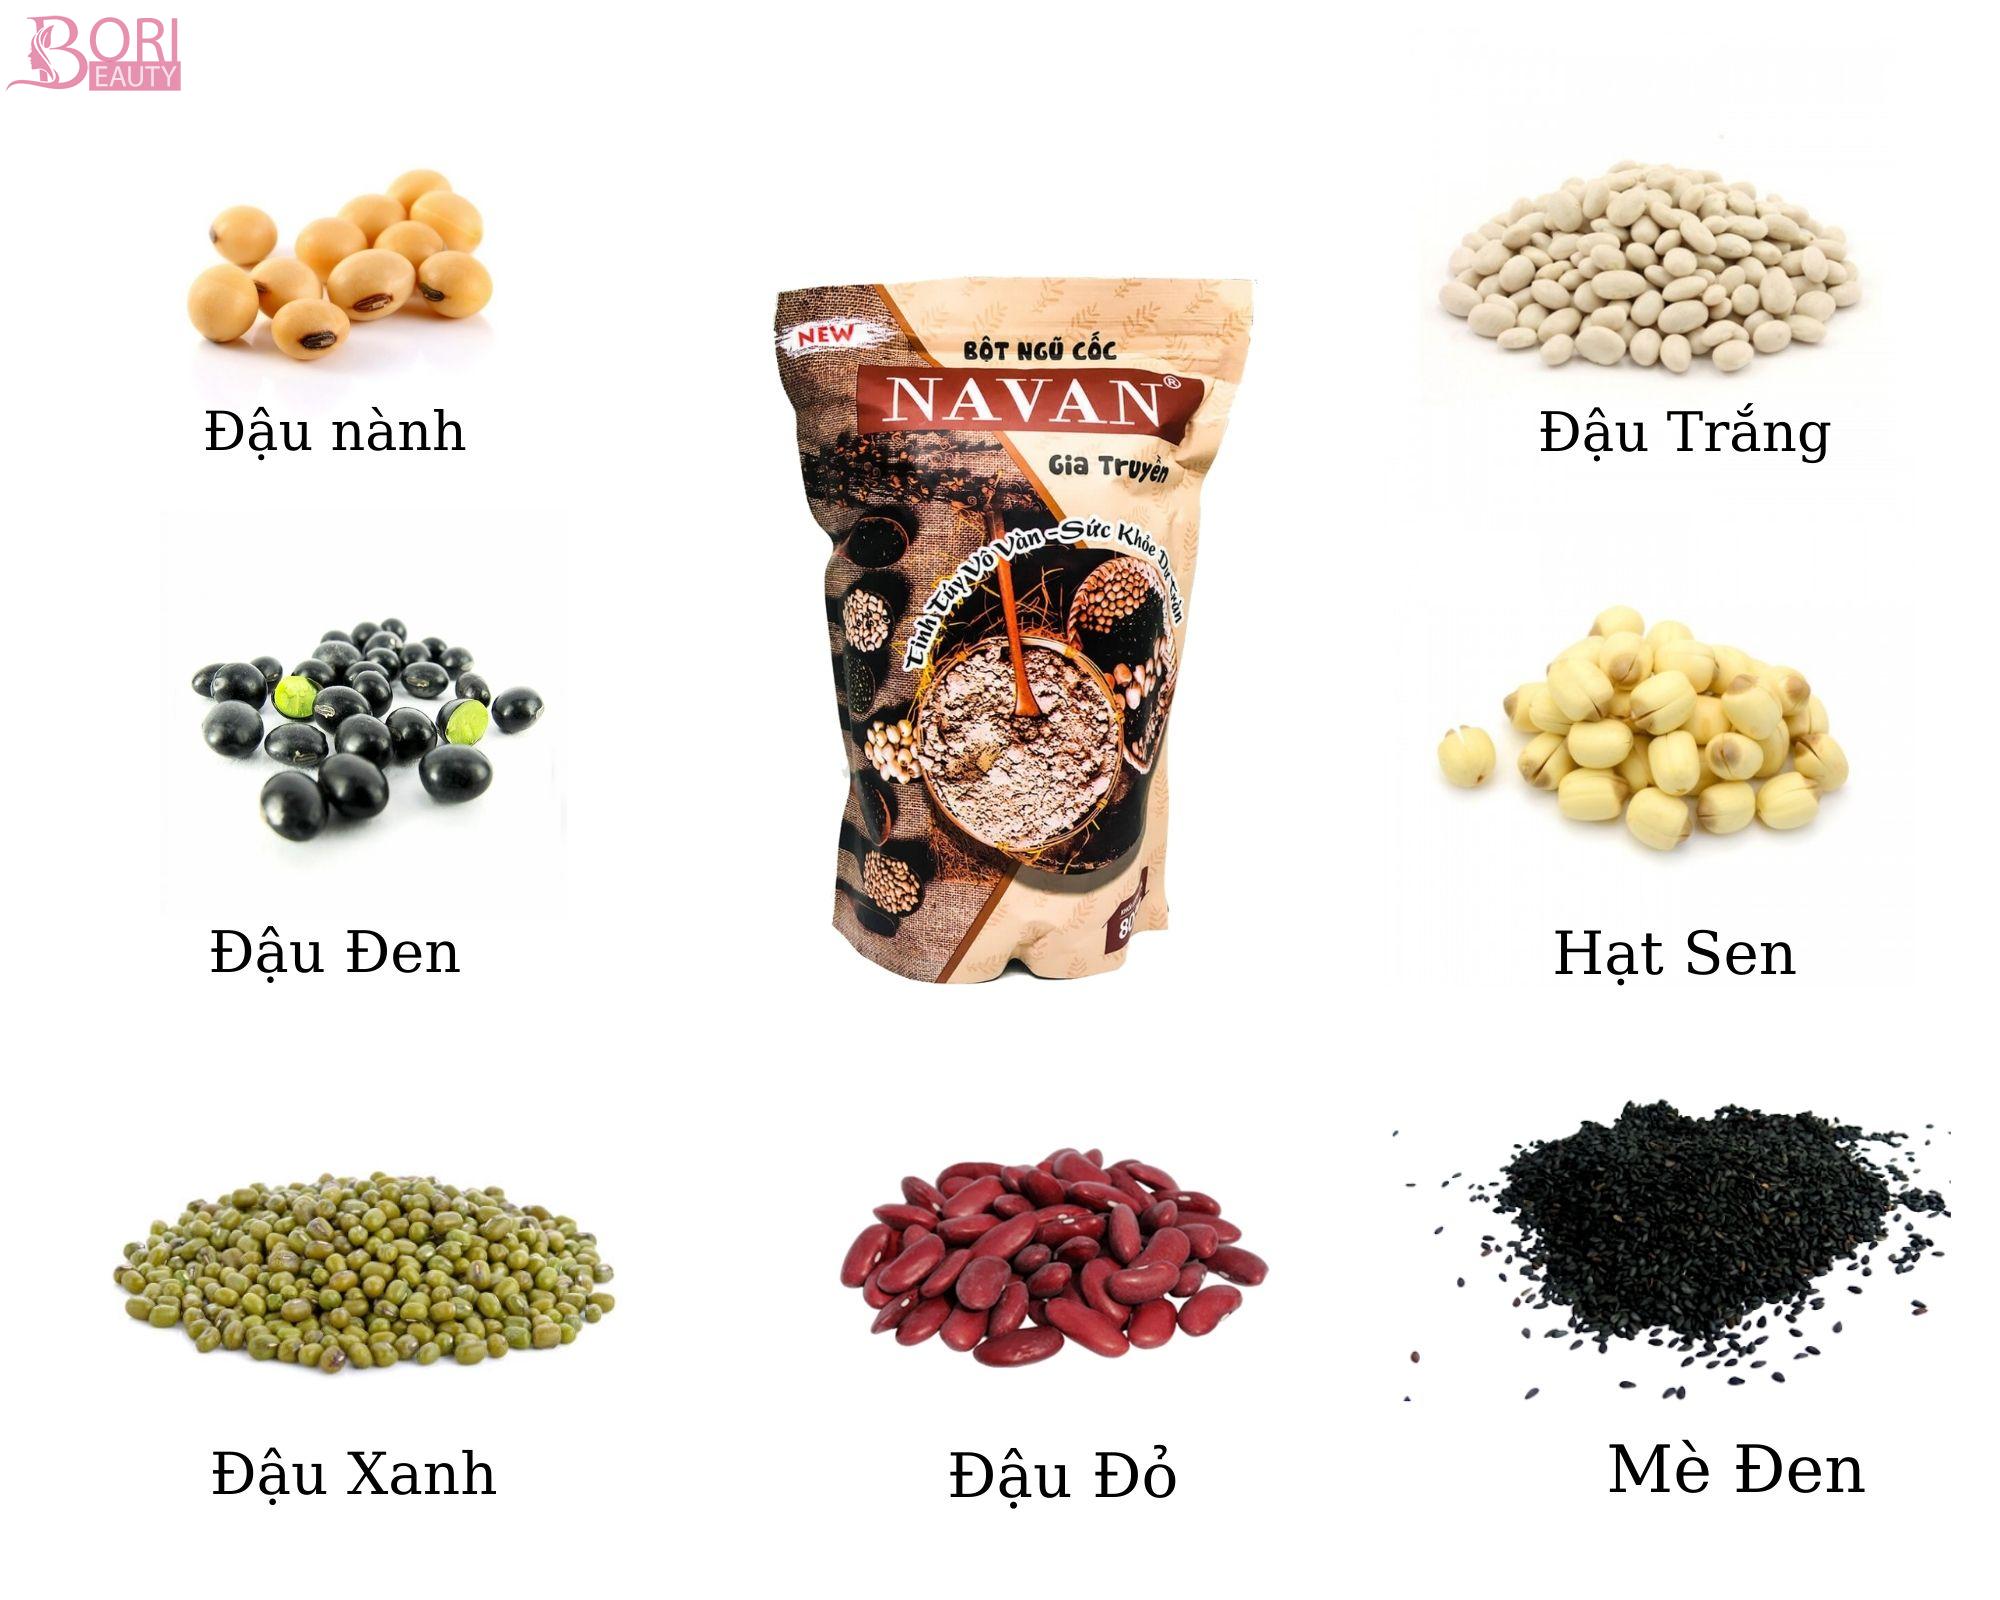 Ngũ cốc Navan được chế biến từ công thức gia truyền gồm 7 loại đậu